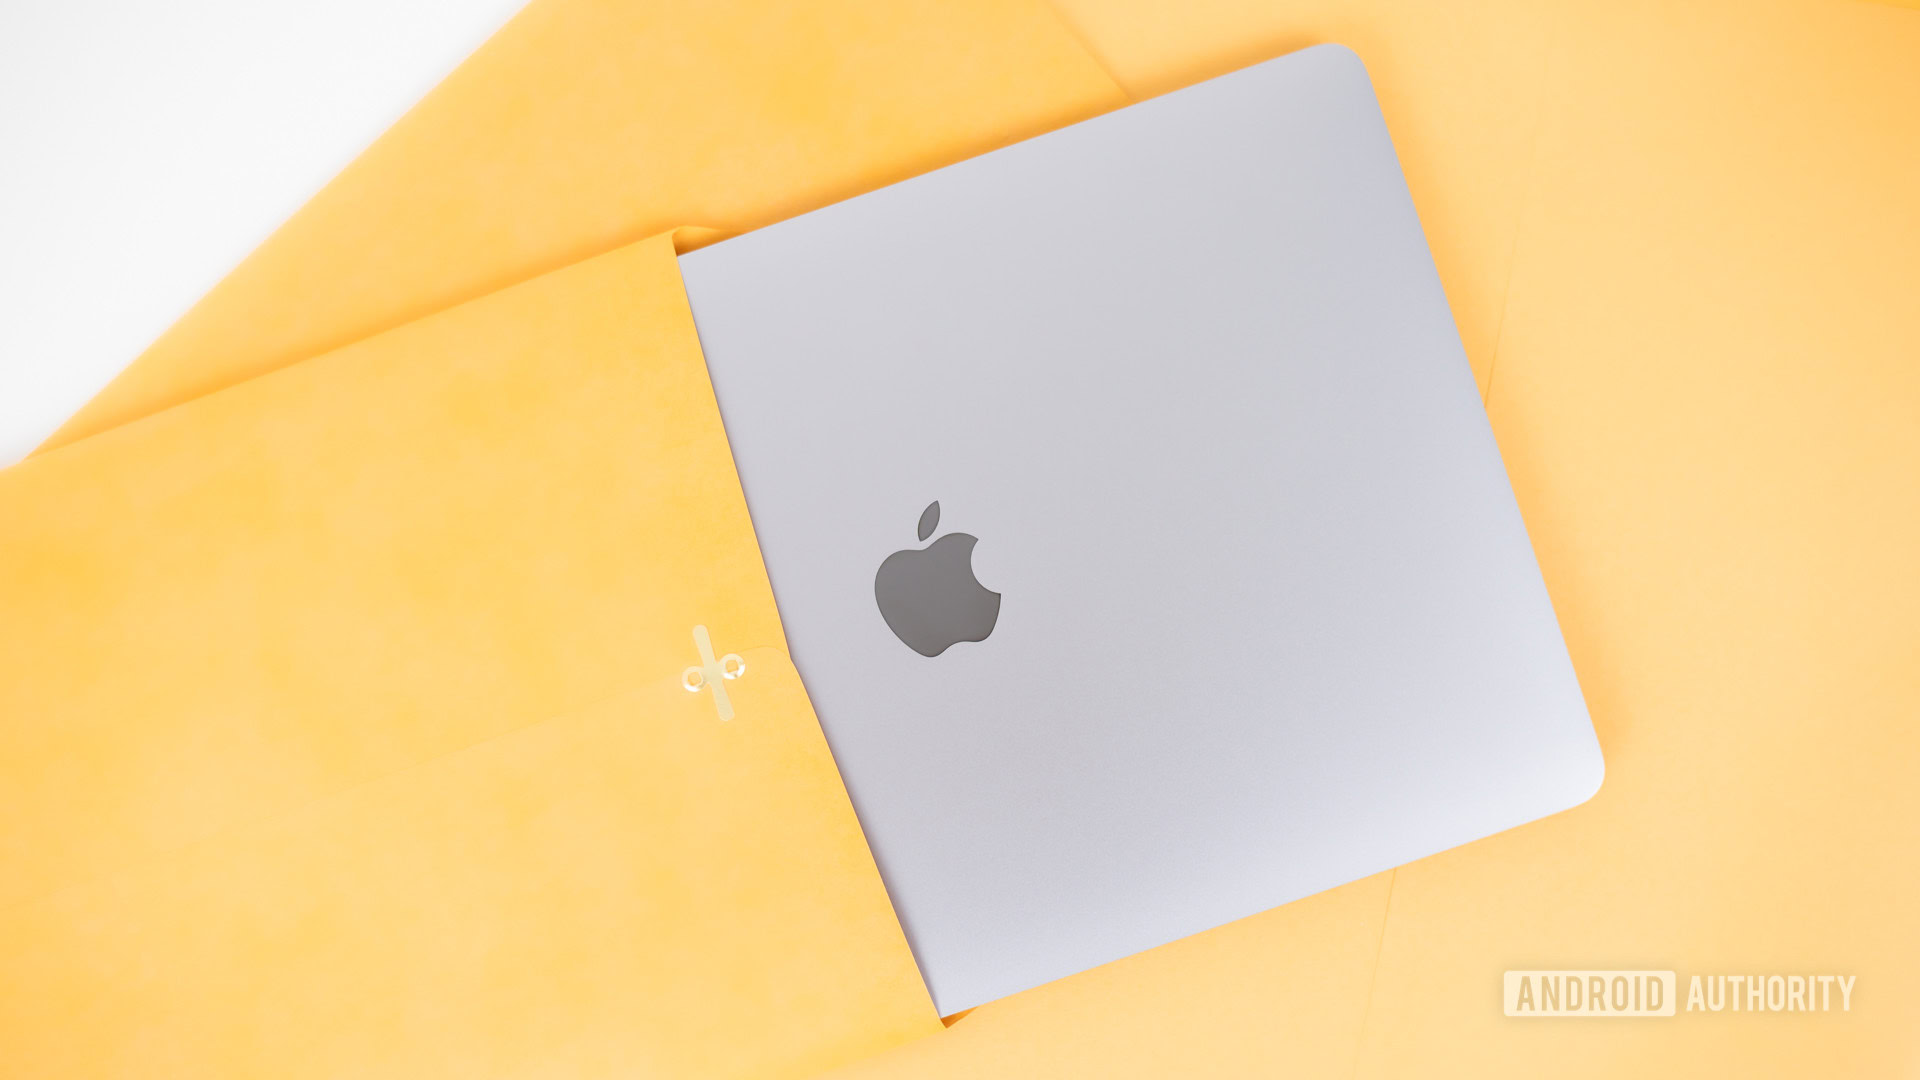 MacBook Air 2020 review